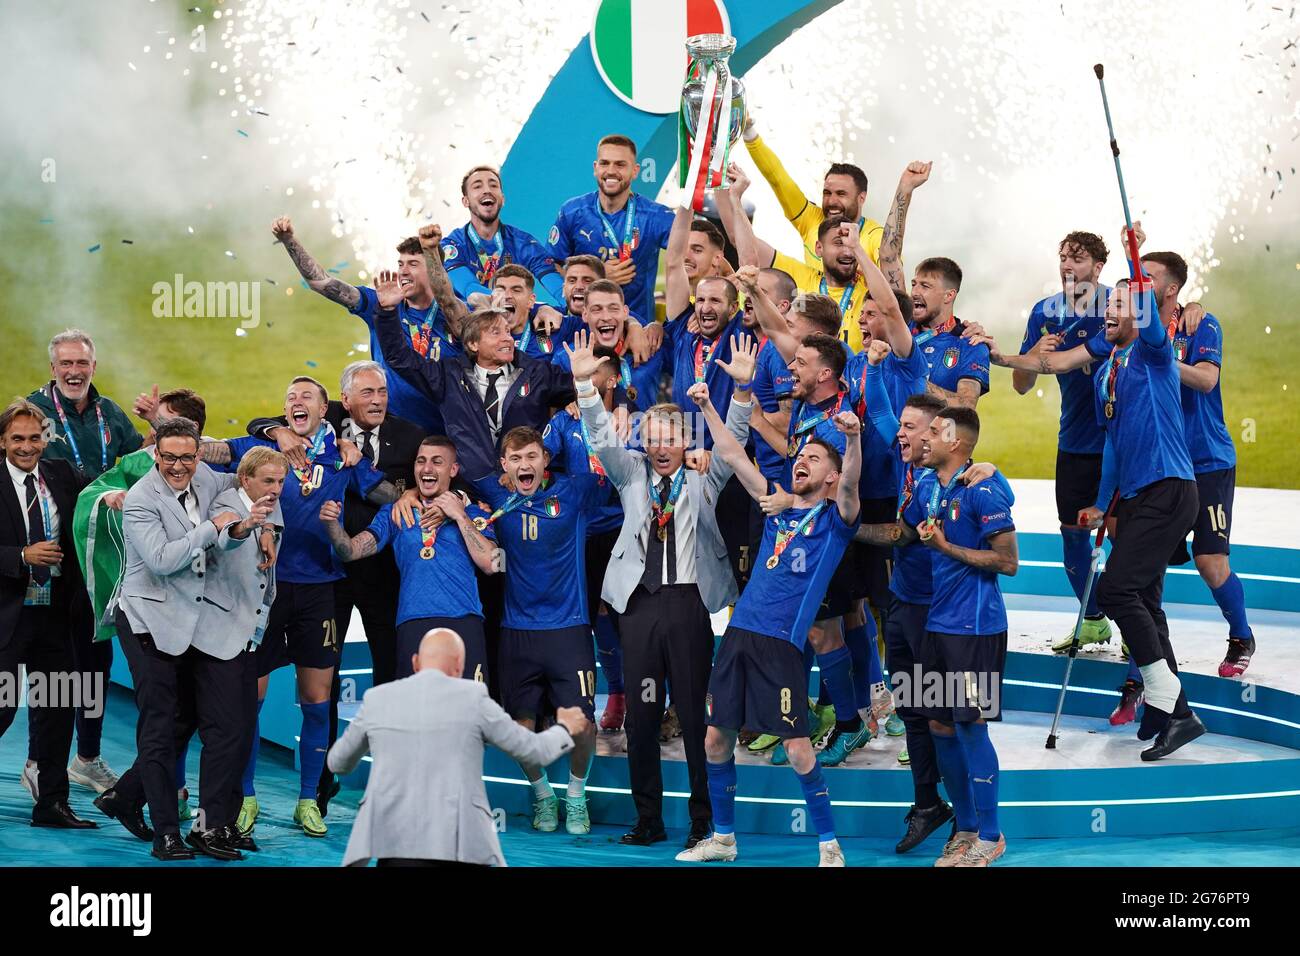 Italien Kapitän Giorgio Chiellini hebt die UEFA Euro 2020 Trophy nach seinem Sieg über England im Finale der UEFA Euro2020 im Wembley Stadium, London, an. Bilddatum: Sonntag, 11. Juli 2021. Stockfoto